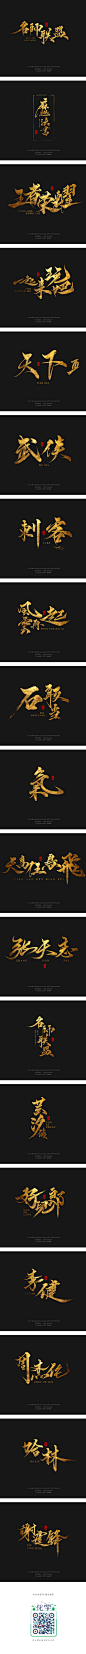 缘本尚字集| 捌月手寫字集 -字体传奇网-中国首个字体品牌设计师交流网